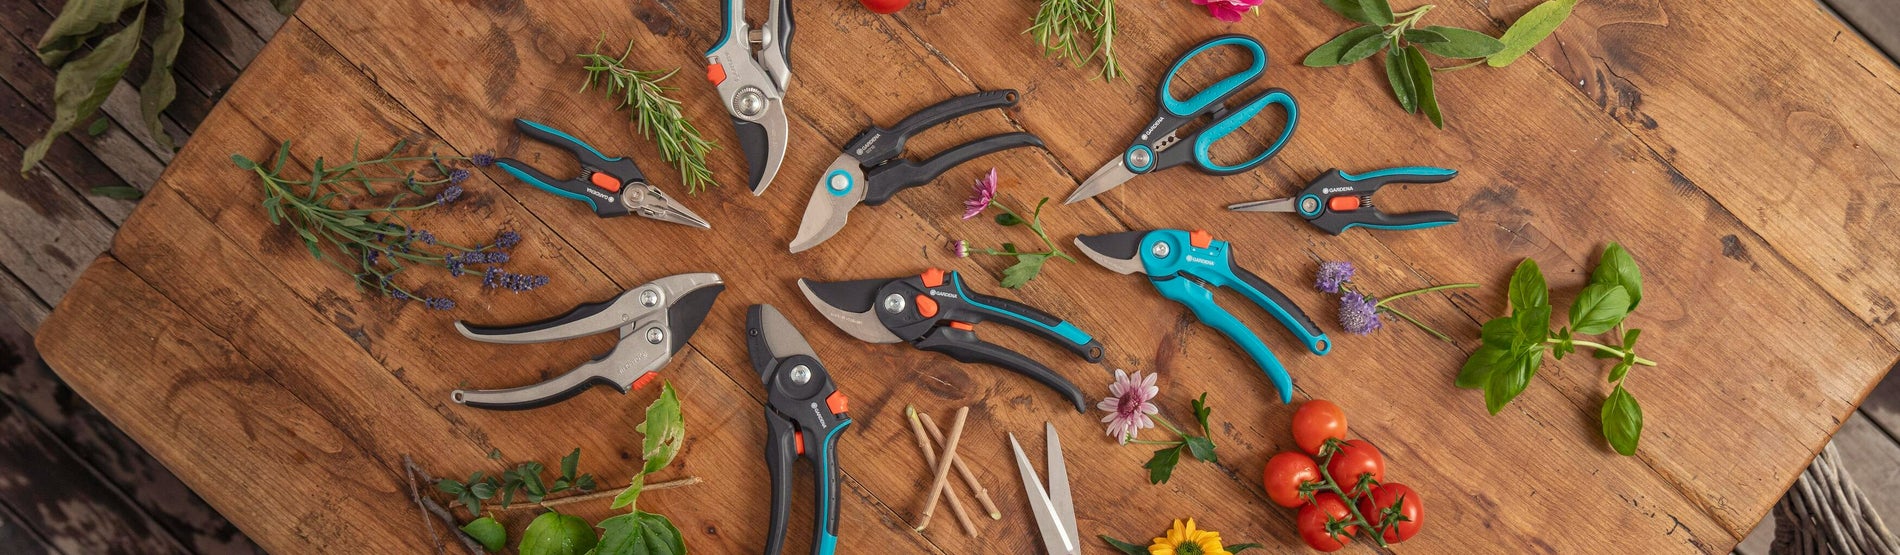 Le top 10 des outils de jardinage Gardena à avoir chez soi - Le Parisien